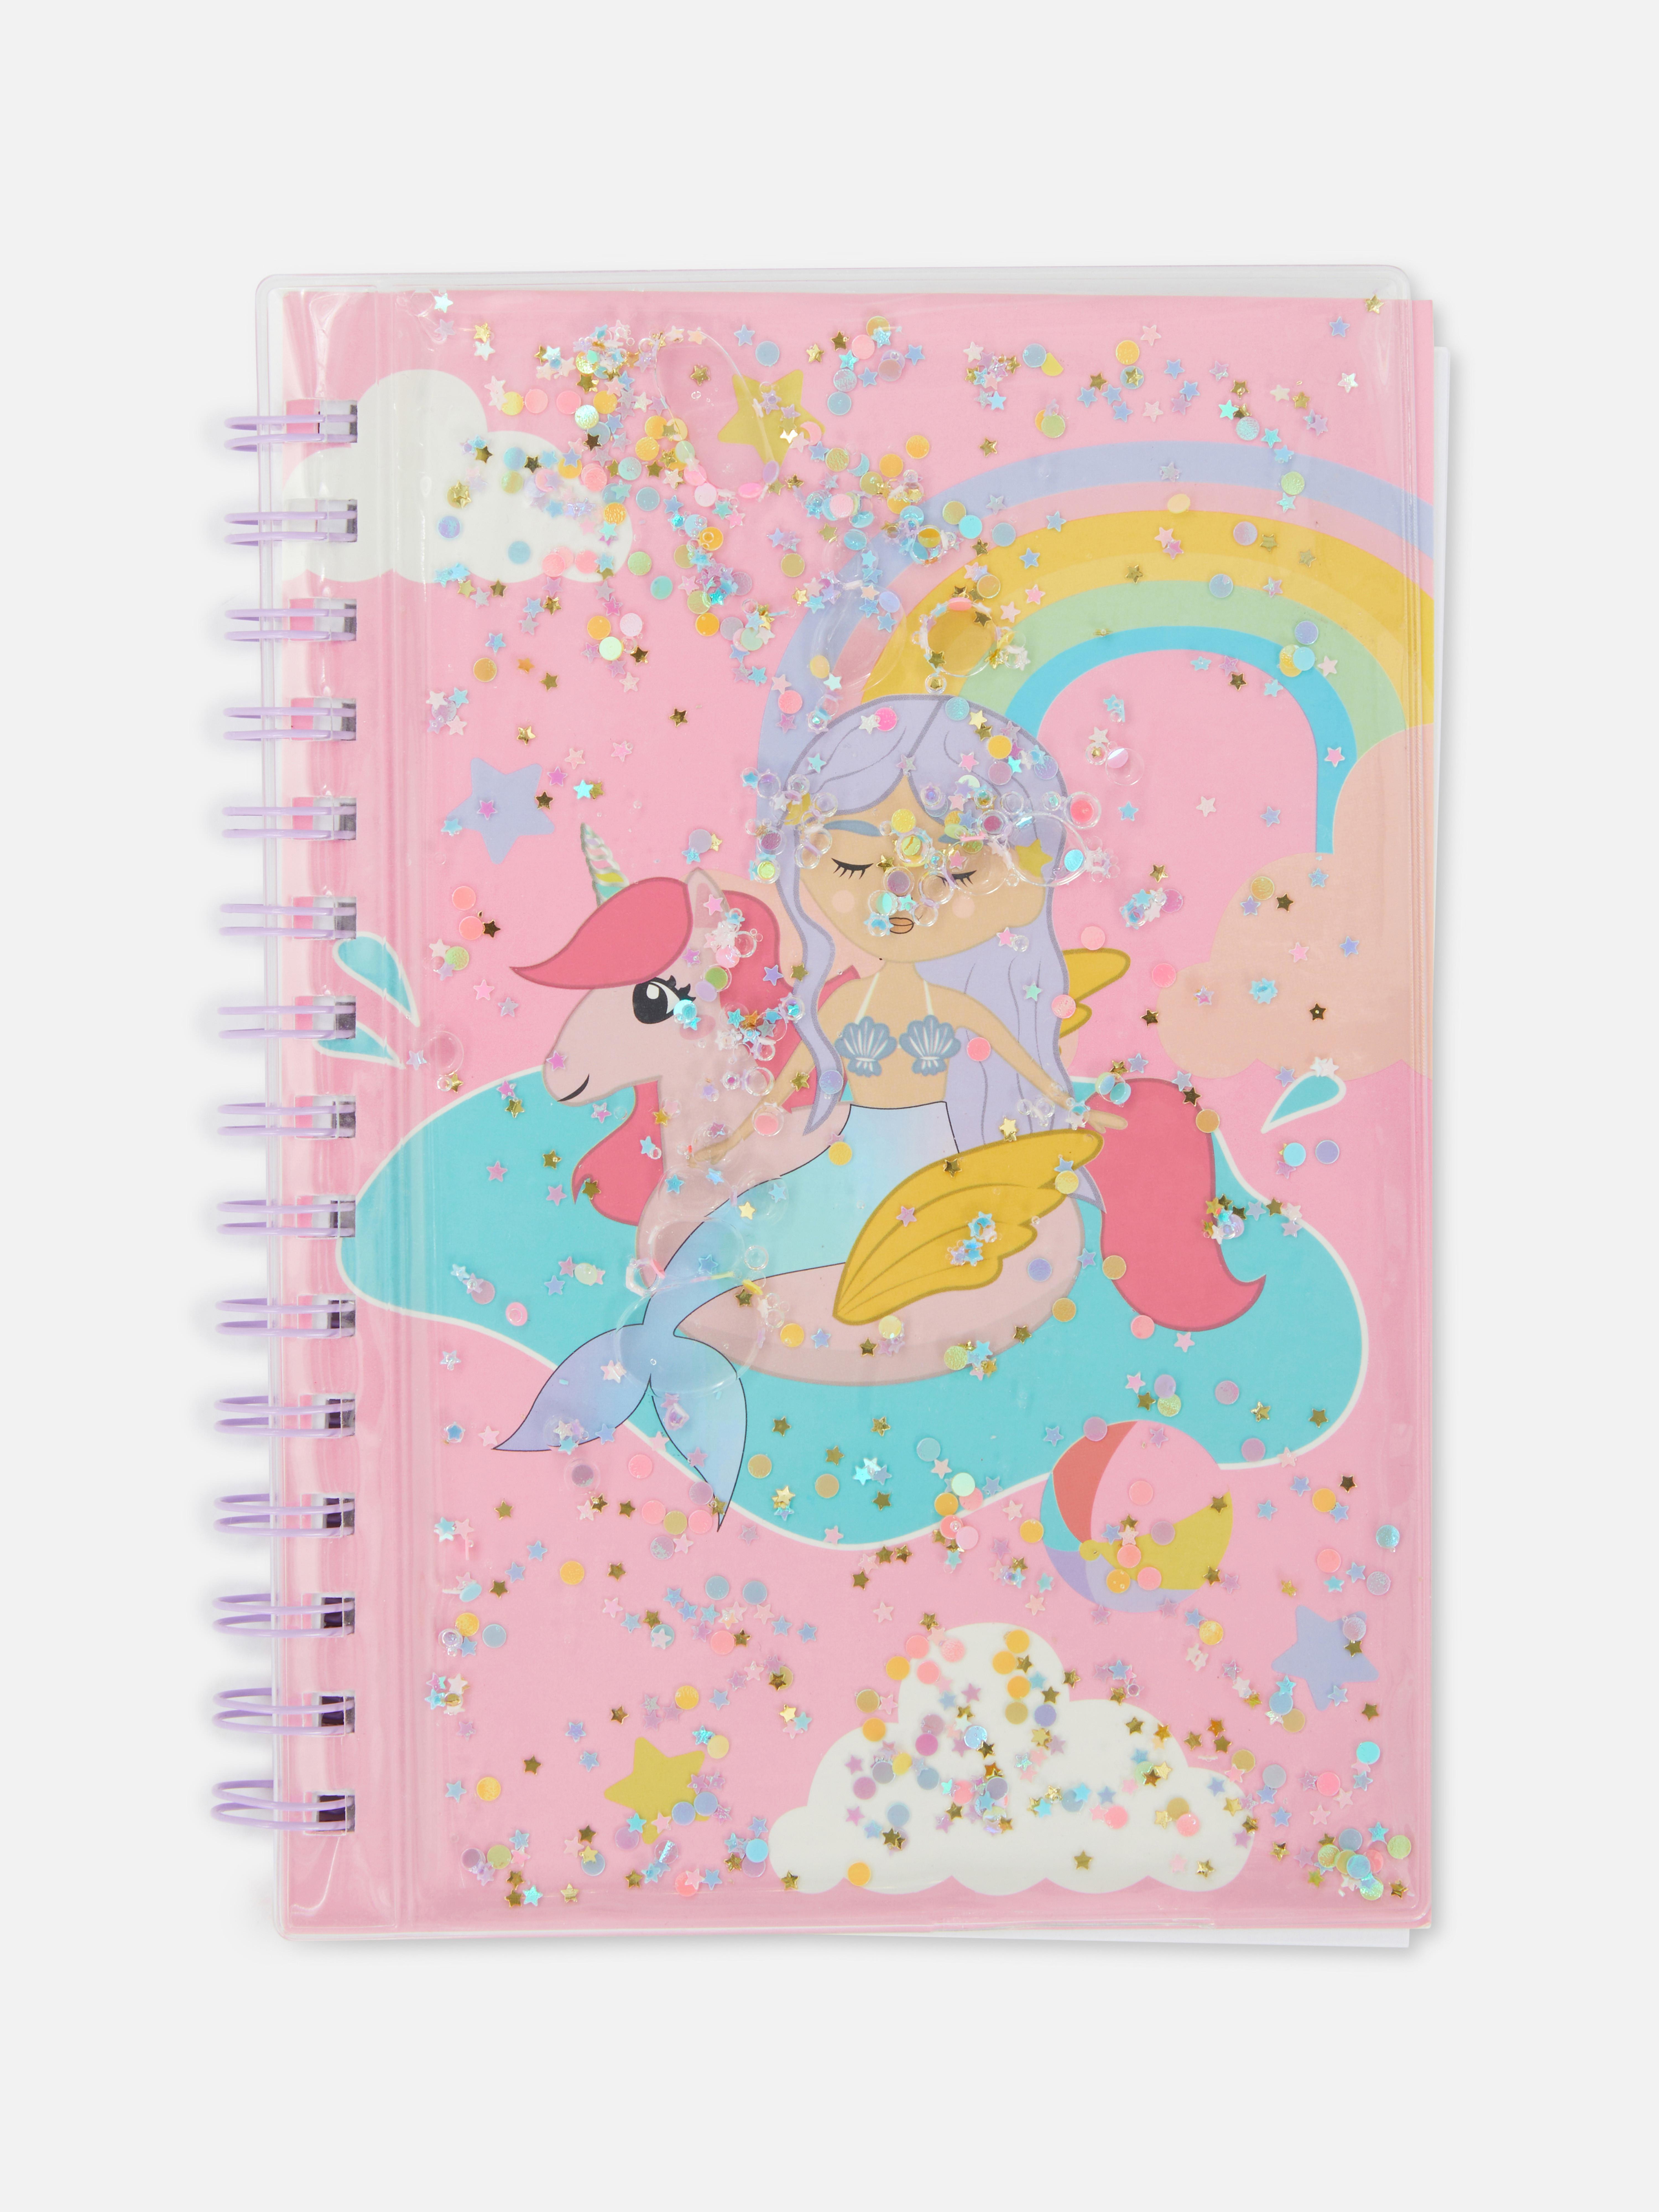 Cuaderno pautado A5 con sirena y unicornio